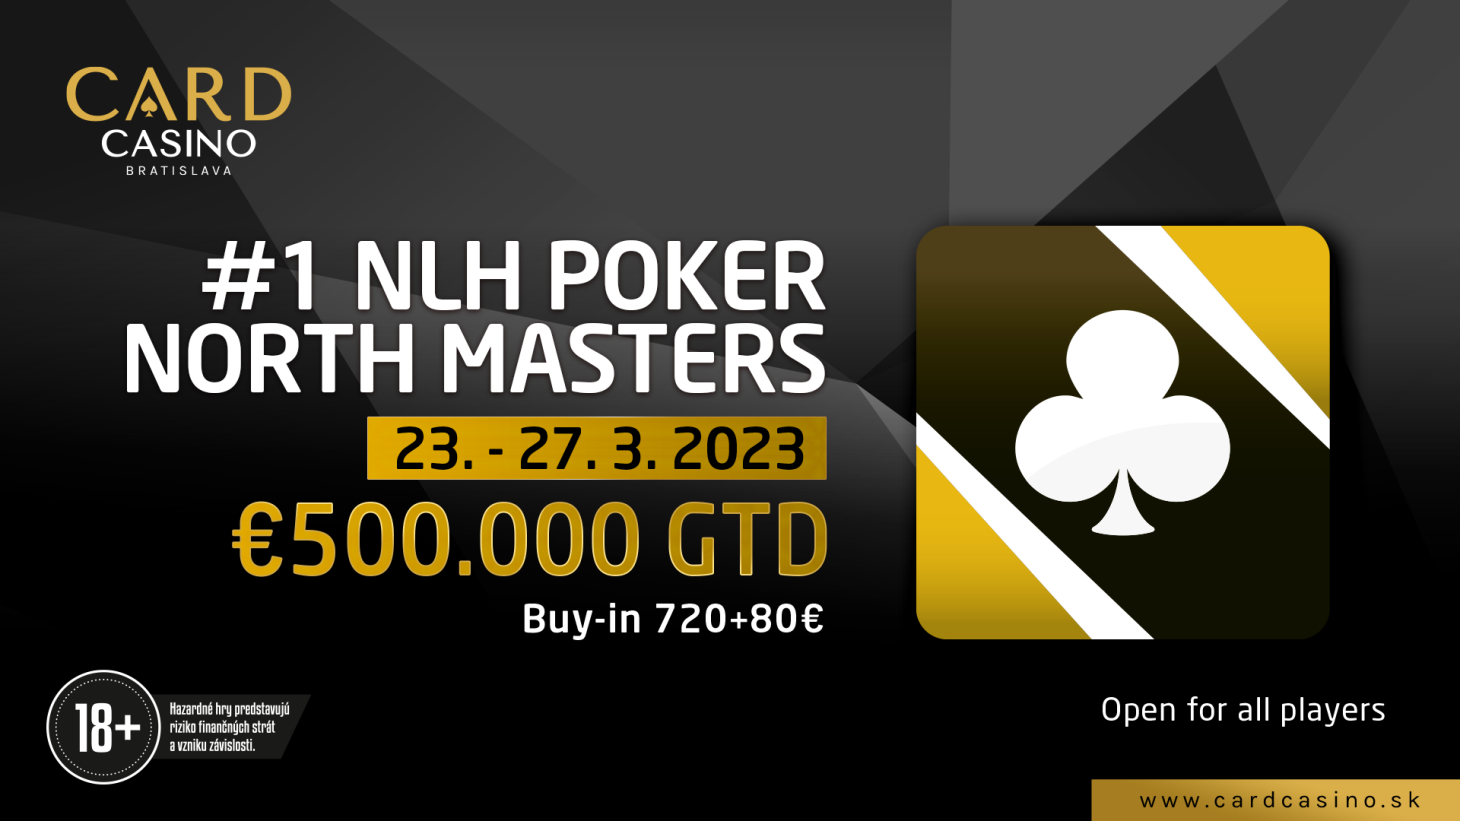 Turnaj s najväčšou garanciou sa blíži. V Carde sa bude hrať POKER NORTH MASTERS o 500.000€!